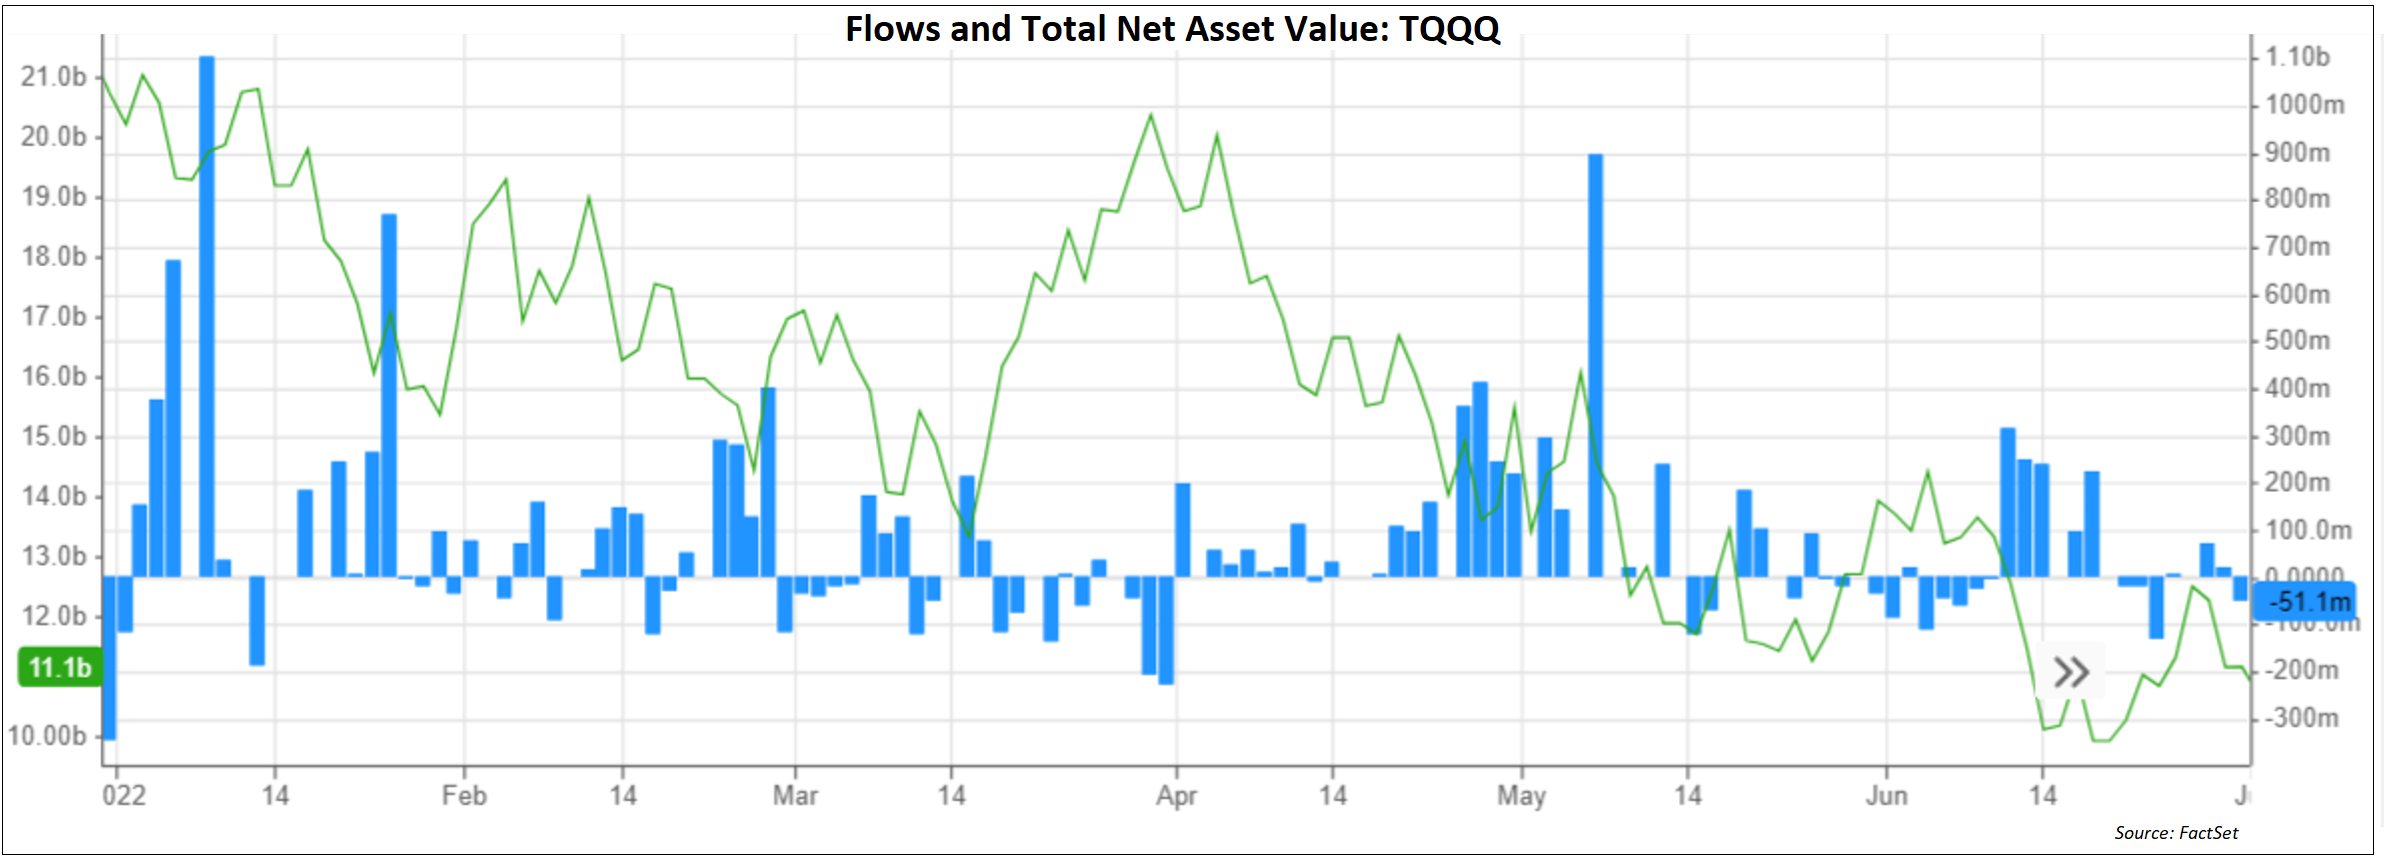 flows-total-net-asset-value-tqqq